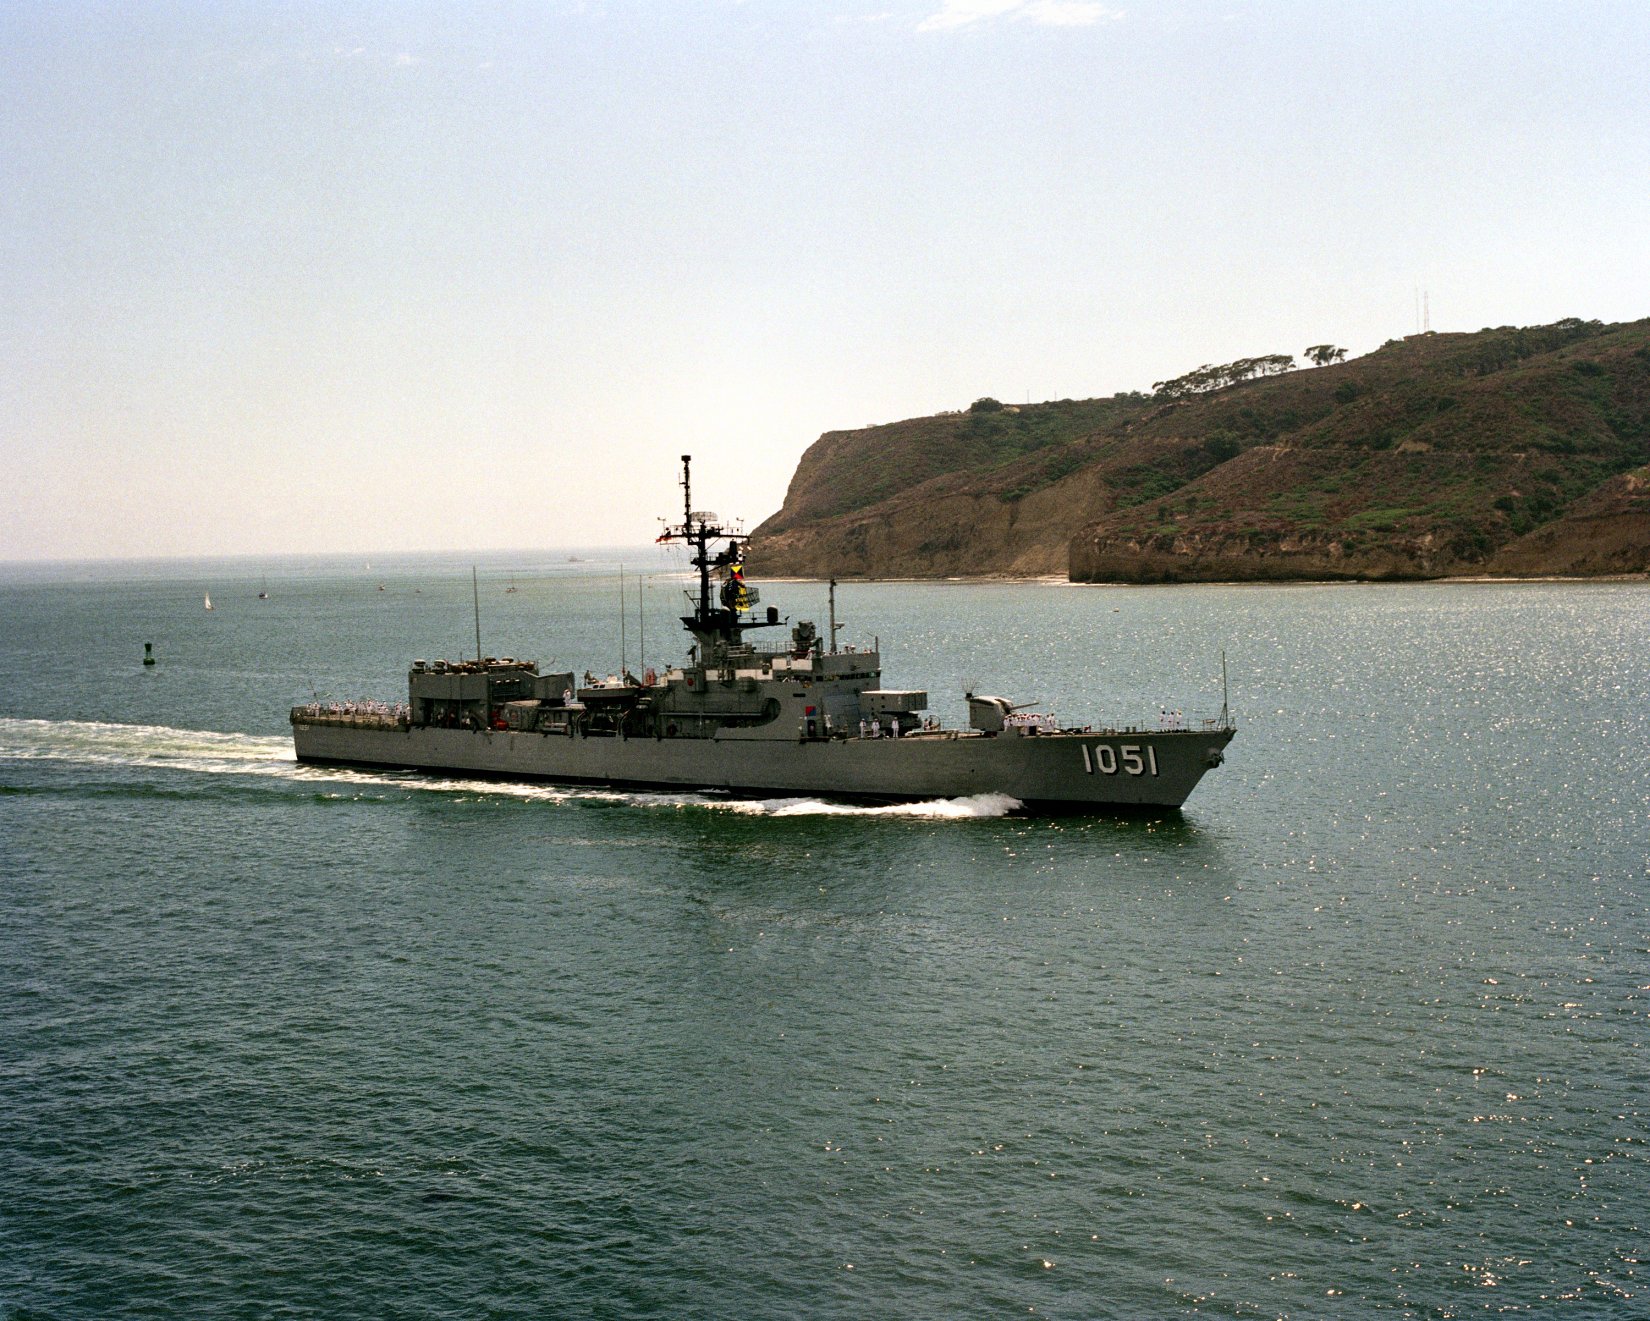 USS O'CALLAHAN FF 1051 DE 1051 Decal U S NAVY USN Military S01 